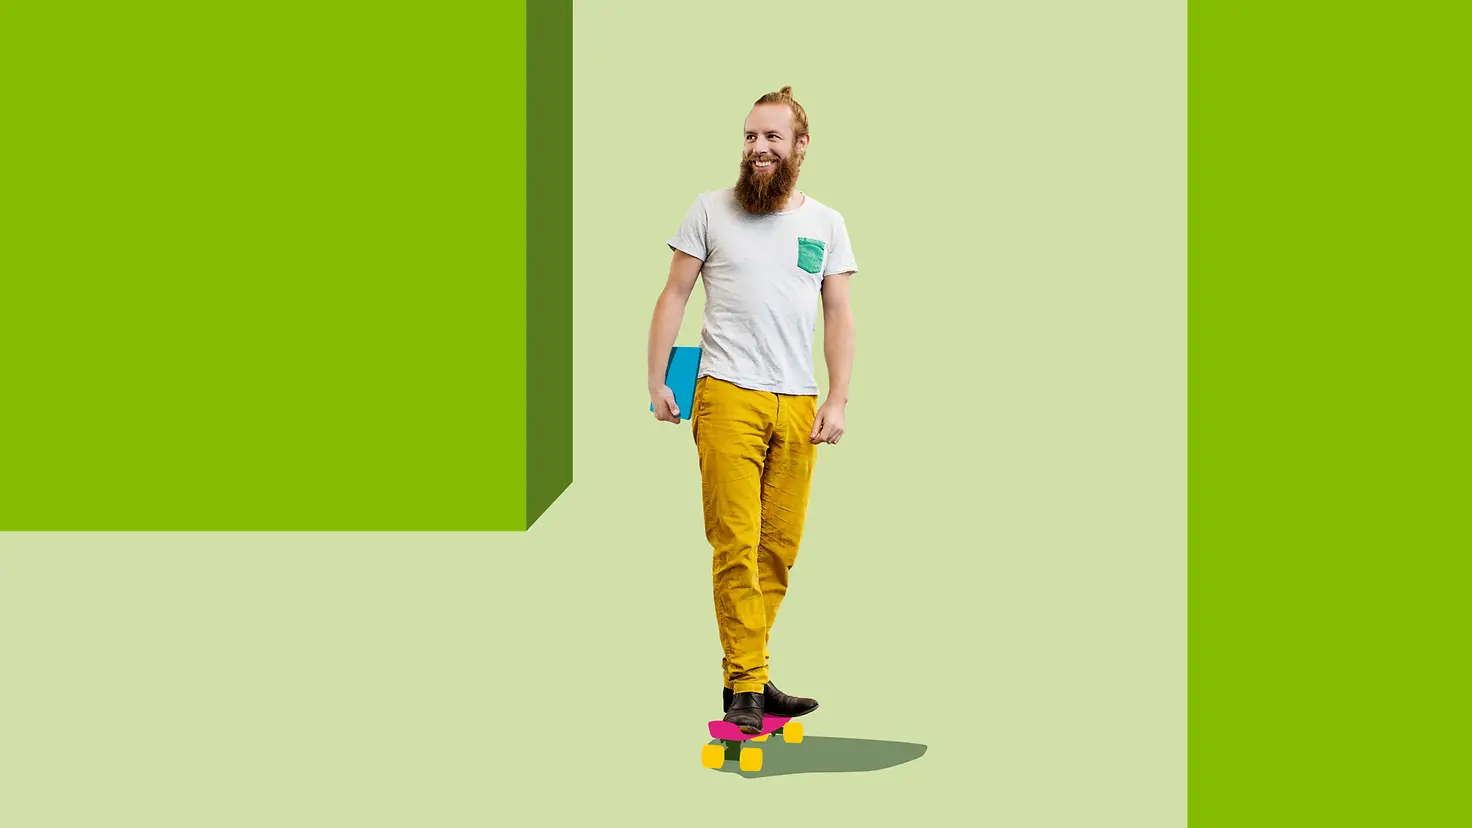 Ein Mann steht vor einem illustrierten grünen Hintergrund auf seinem Skateboard.